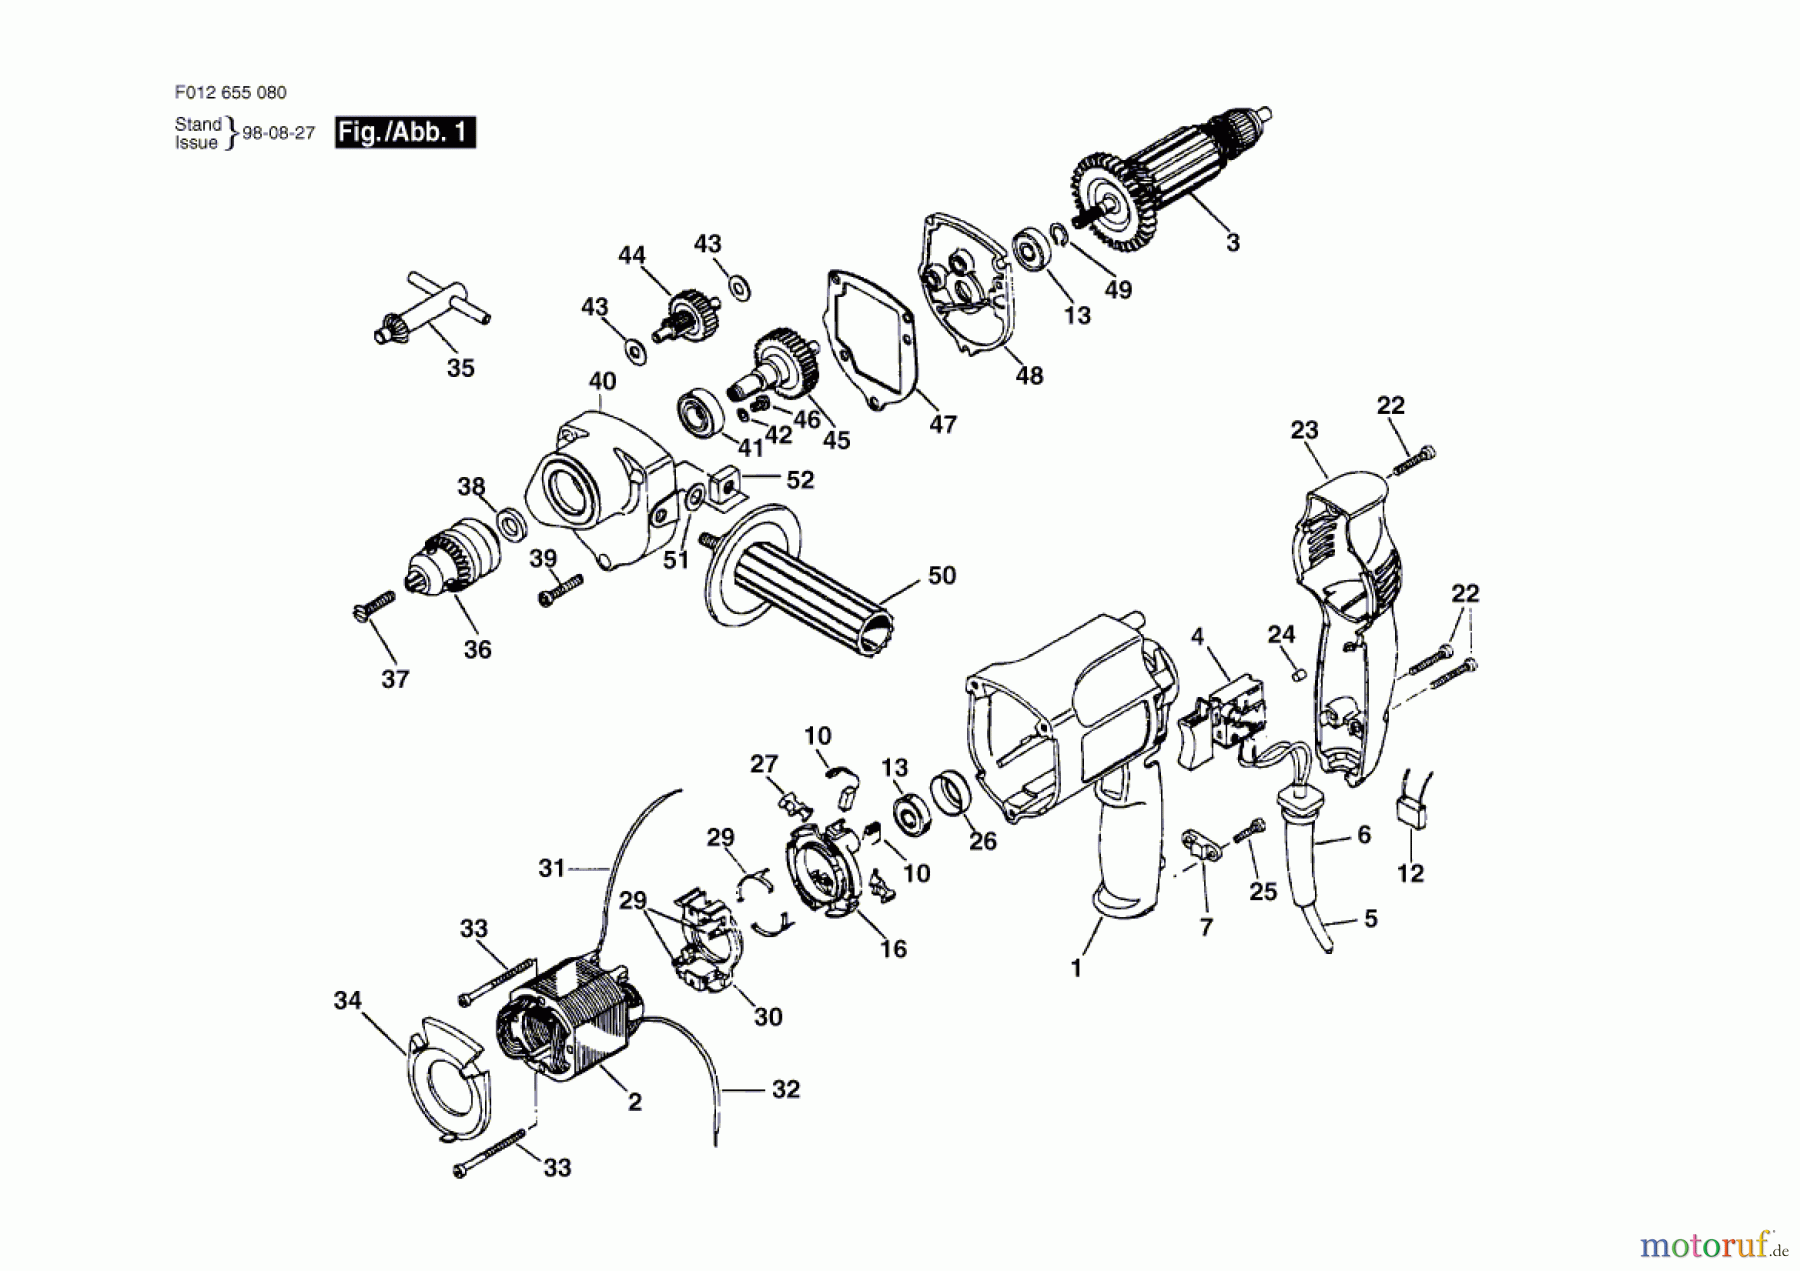  Bosch Werkzeug Bohrmaschine HD 6550-80 Seite 1